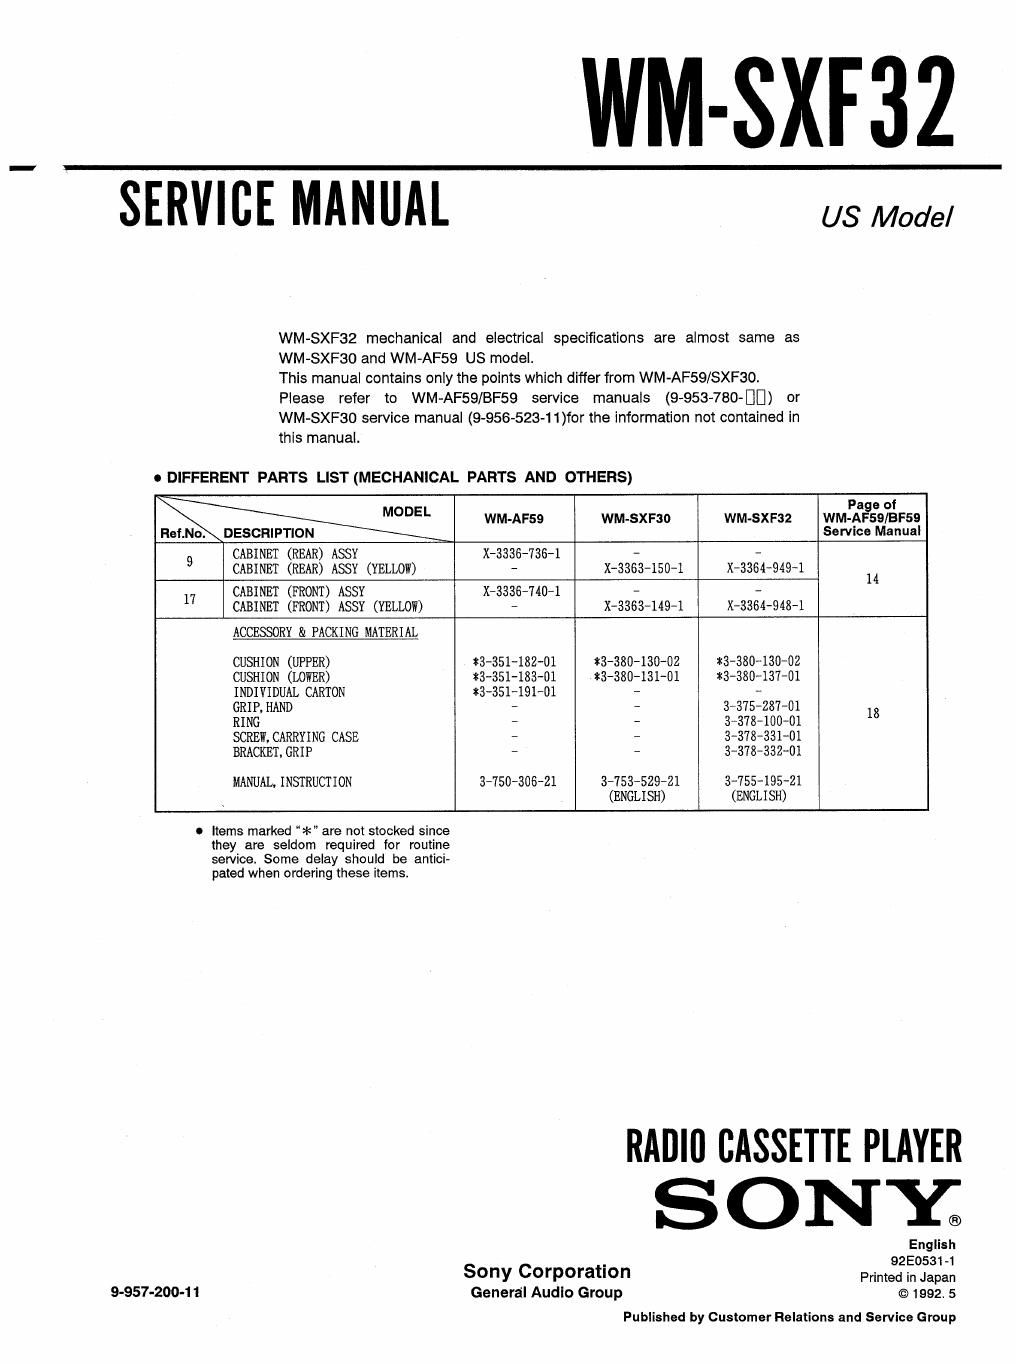 sony wm sxf 32 service manual